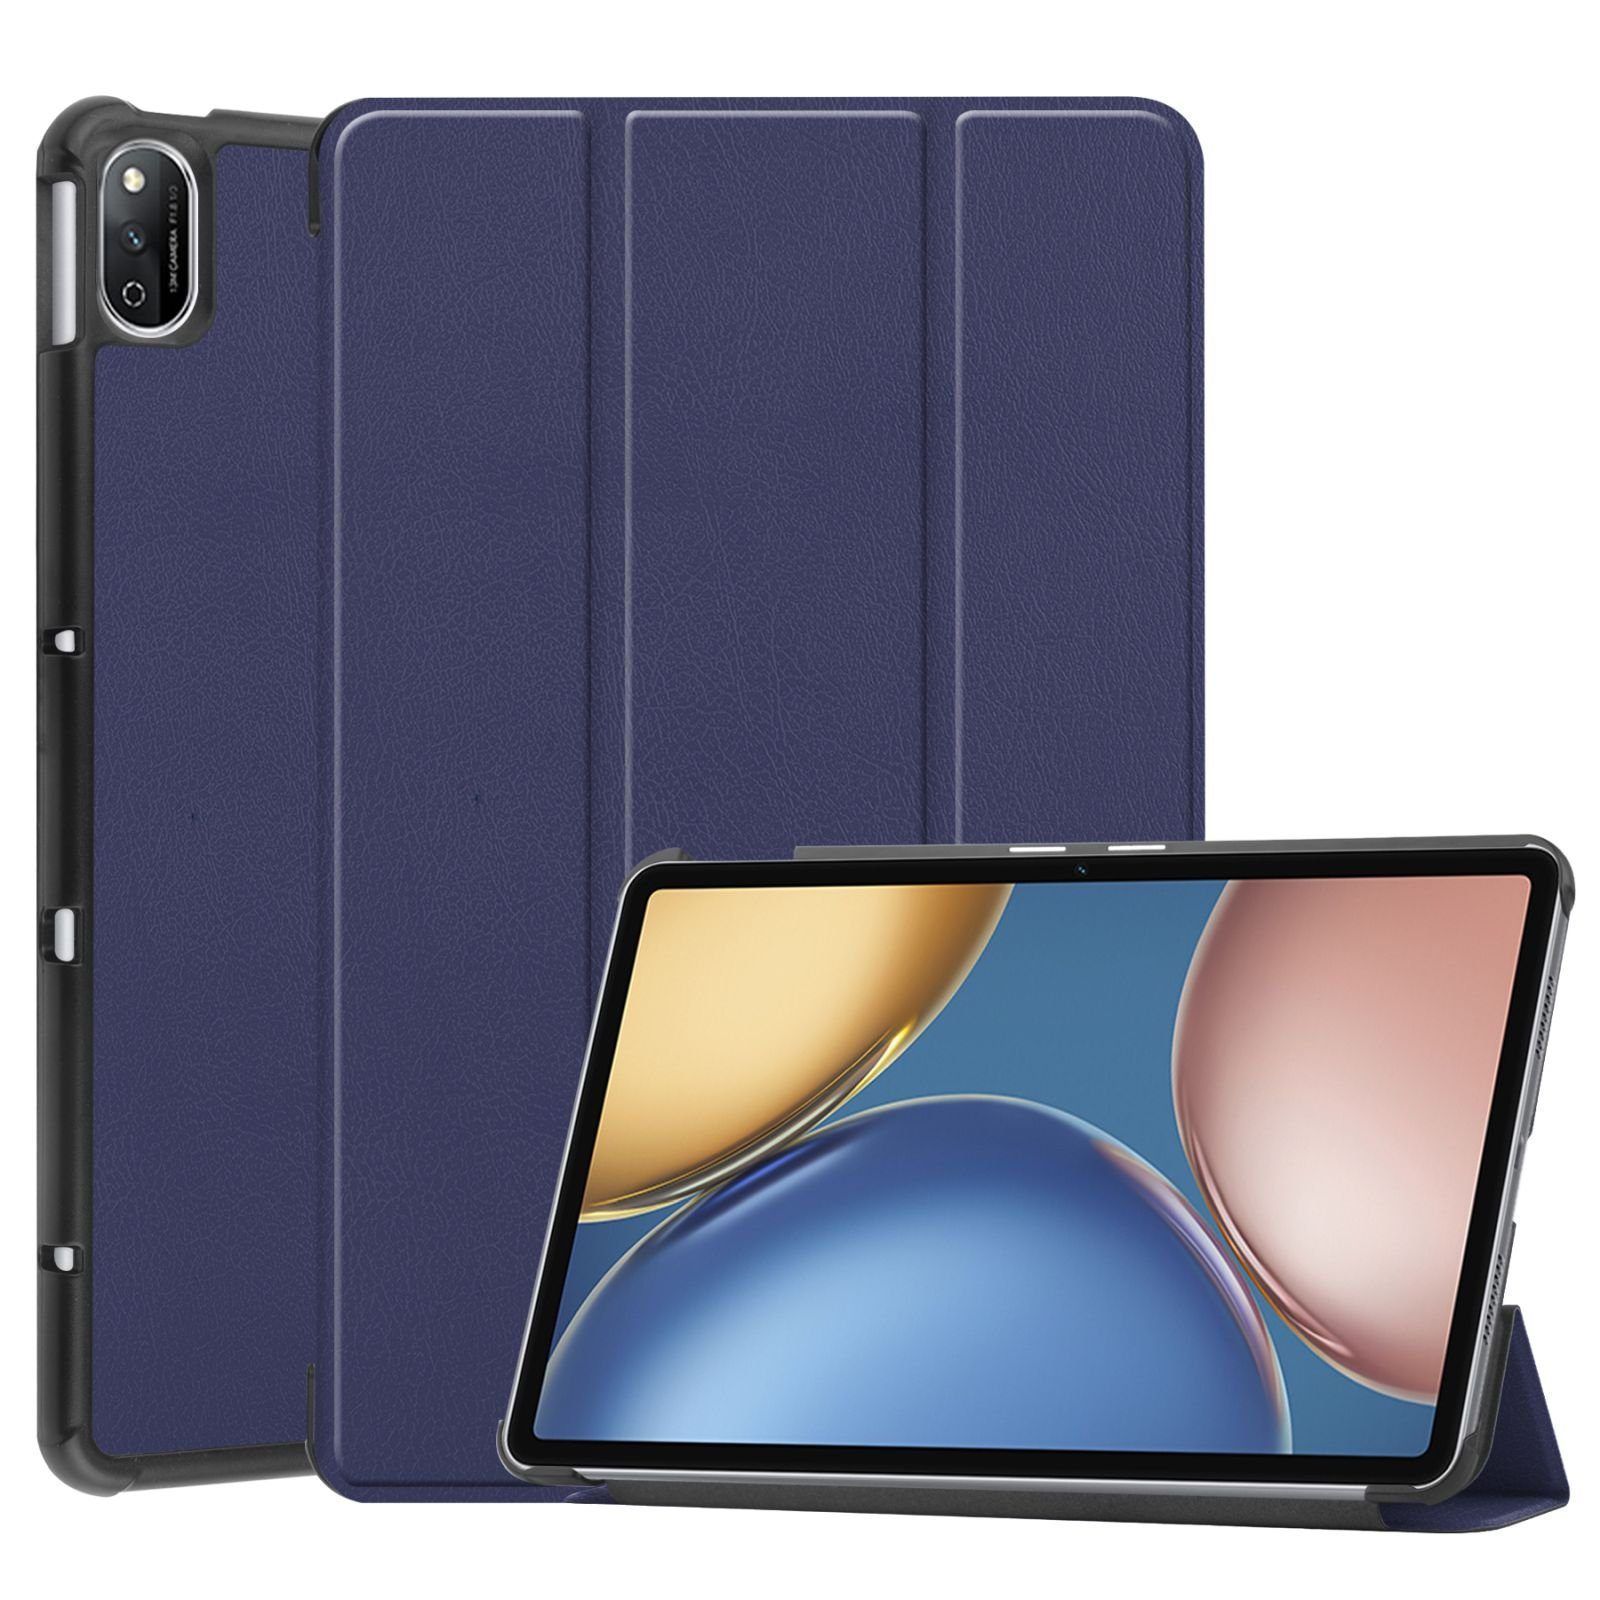 Lobwerk Tablet-Hülle Schutzhülle für Huawei Honor V7 2021 10.4 Zoll, Wake & Sleep Funktion, Sturzdämpfung, Aufstellfunktion